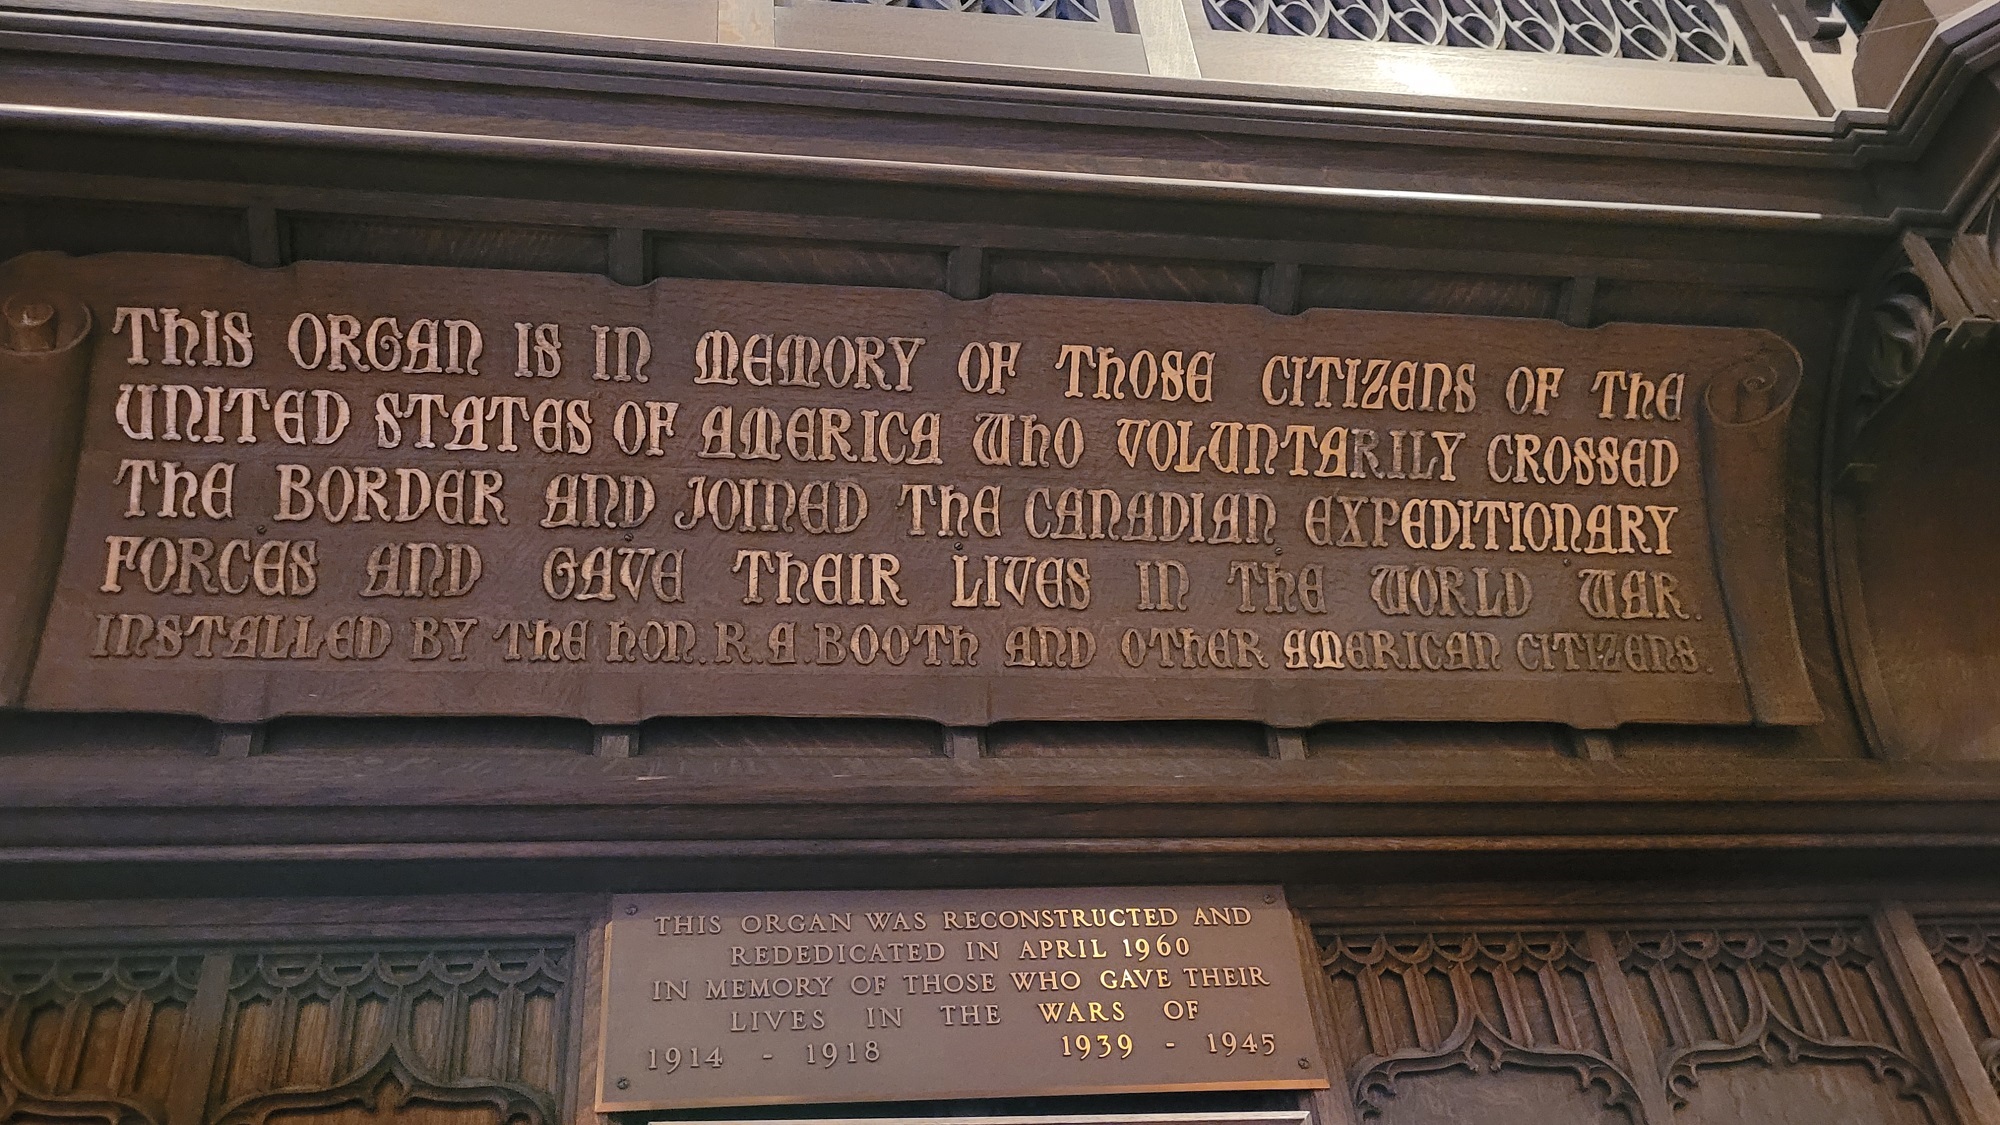 Memorial Organ pipes right side inscription.